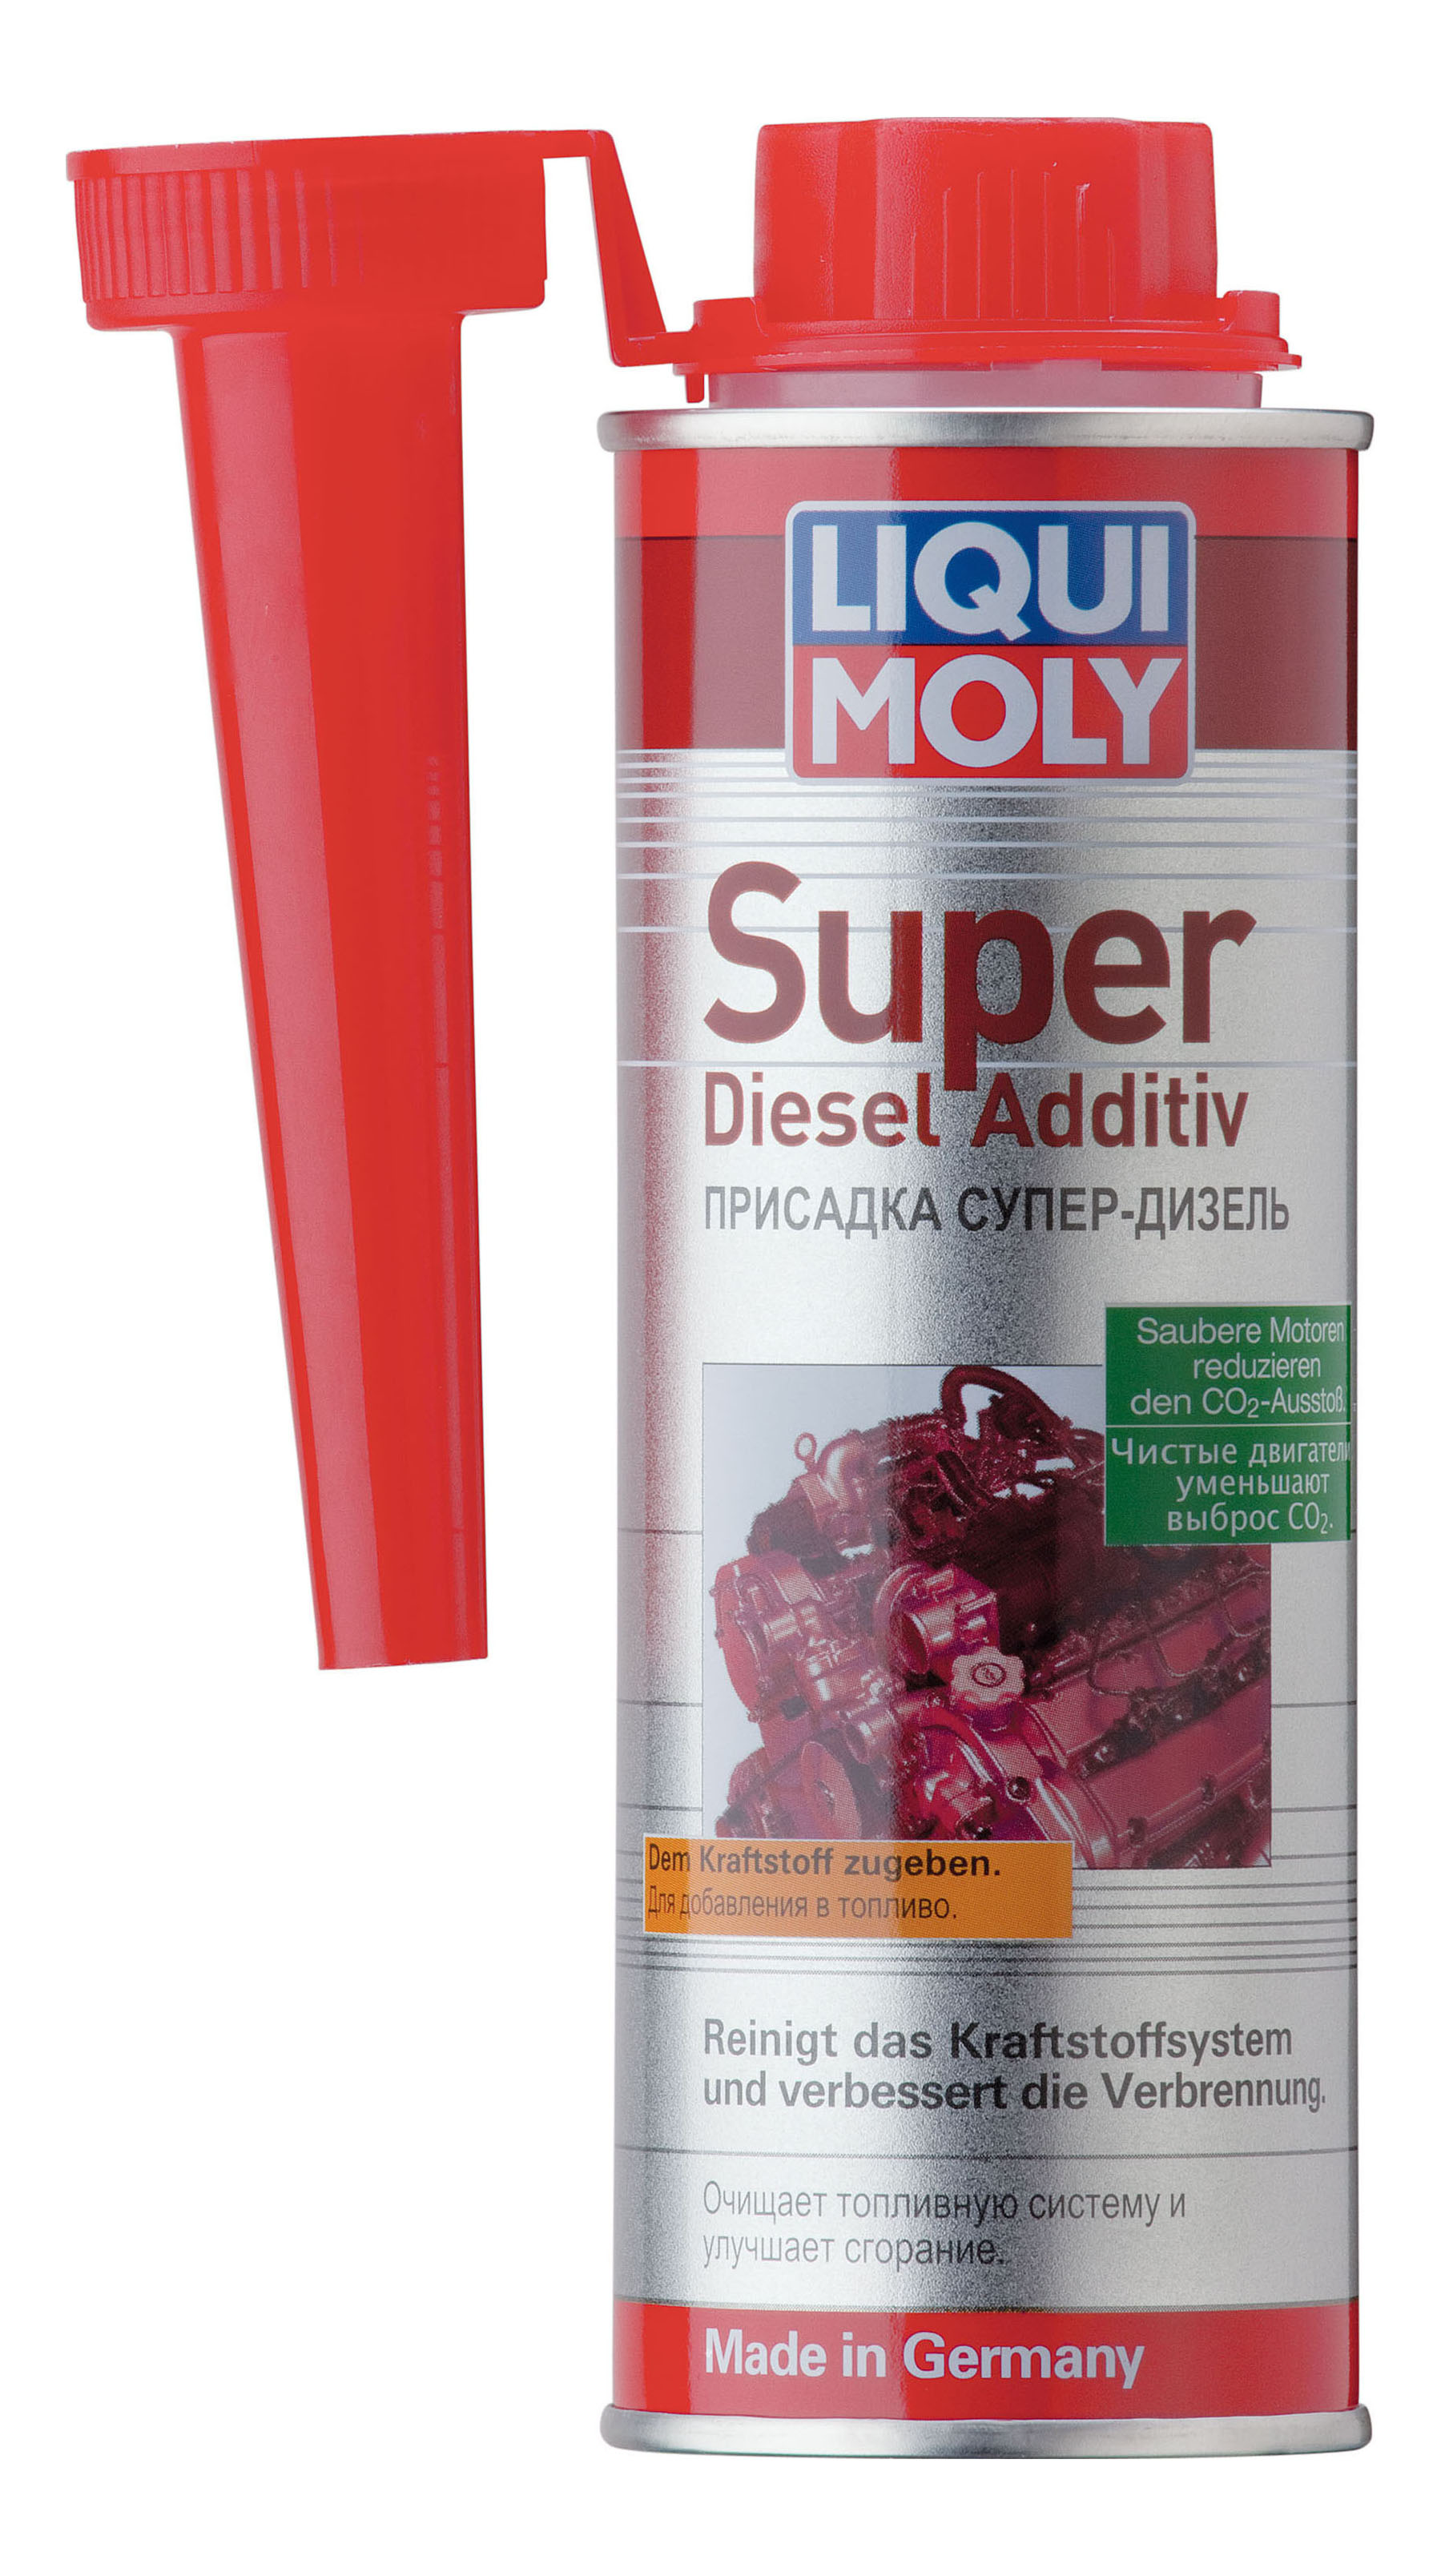 Дизельные добавки. Liqui Moly super Diesel Additiv. Присадка Liqui Moly "super Diesel Additiv", 0,25 л. 1991 Liqui Moly. Очиститель для дизеля Ликви Молли.